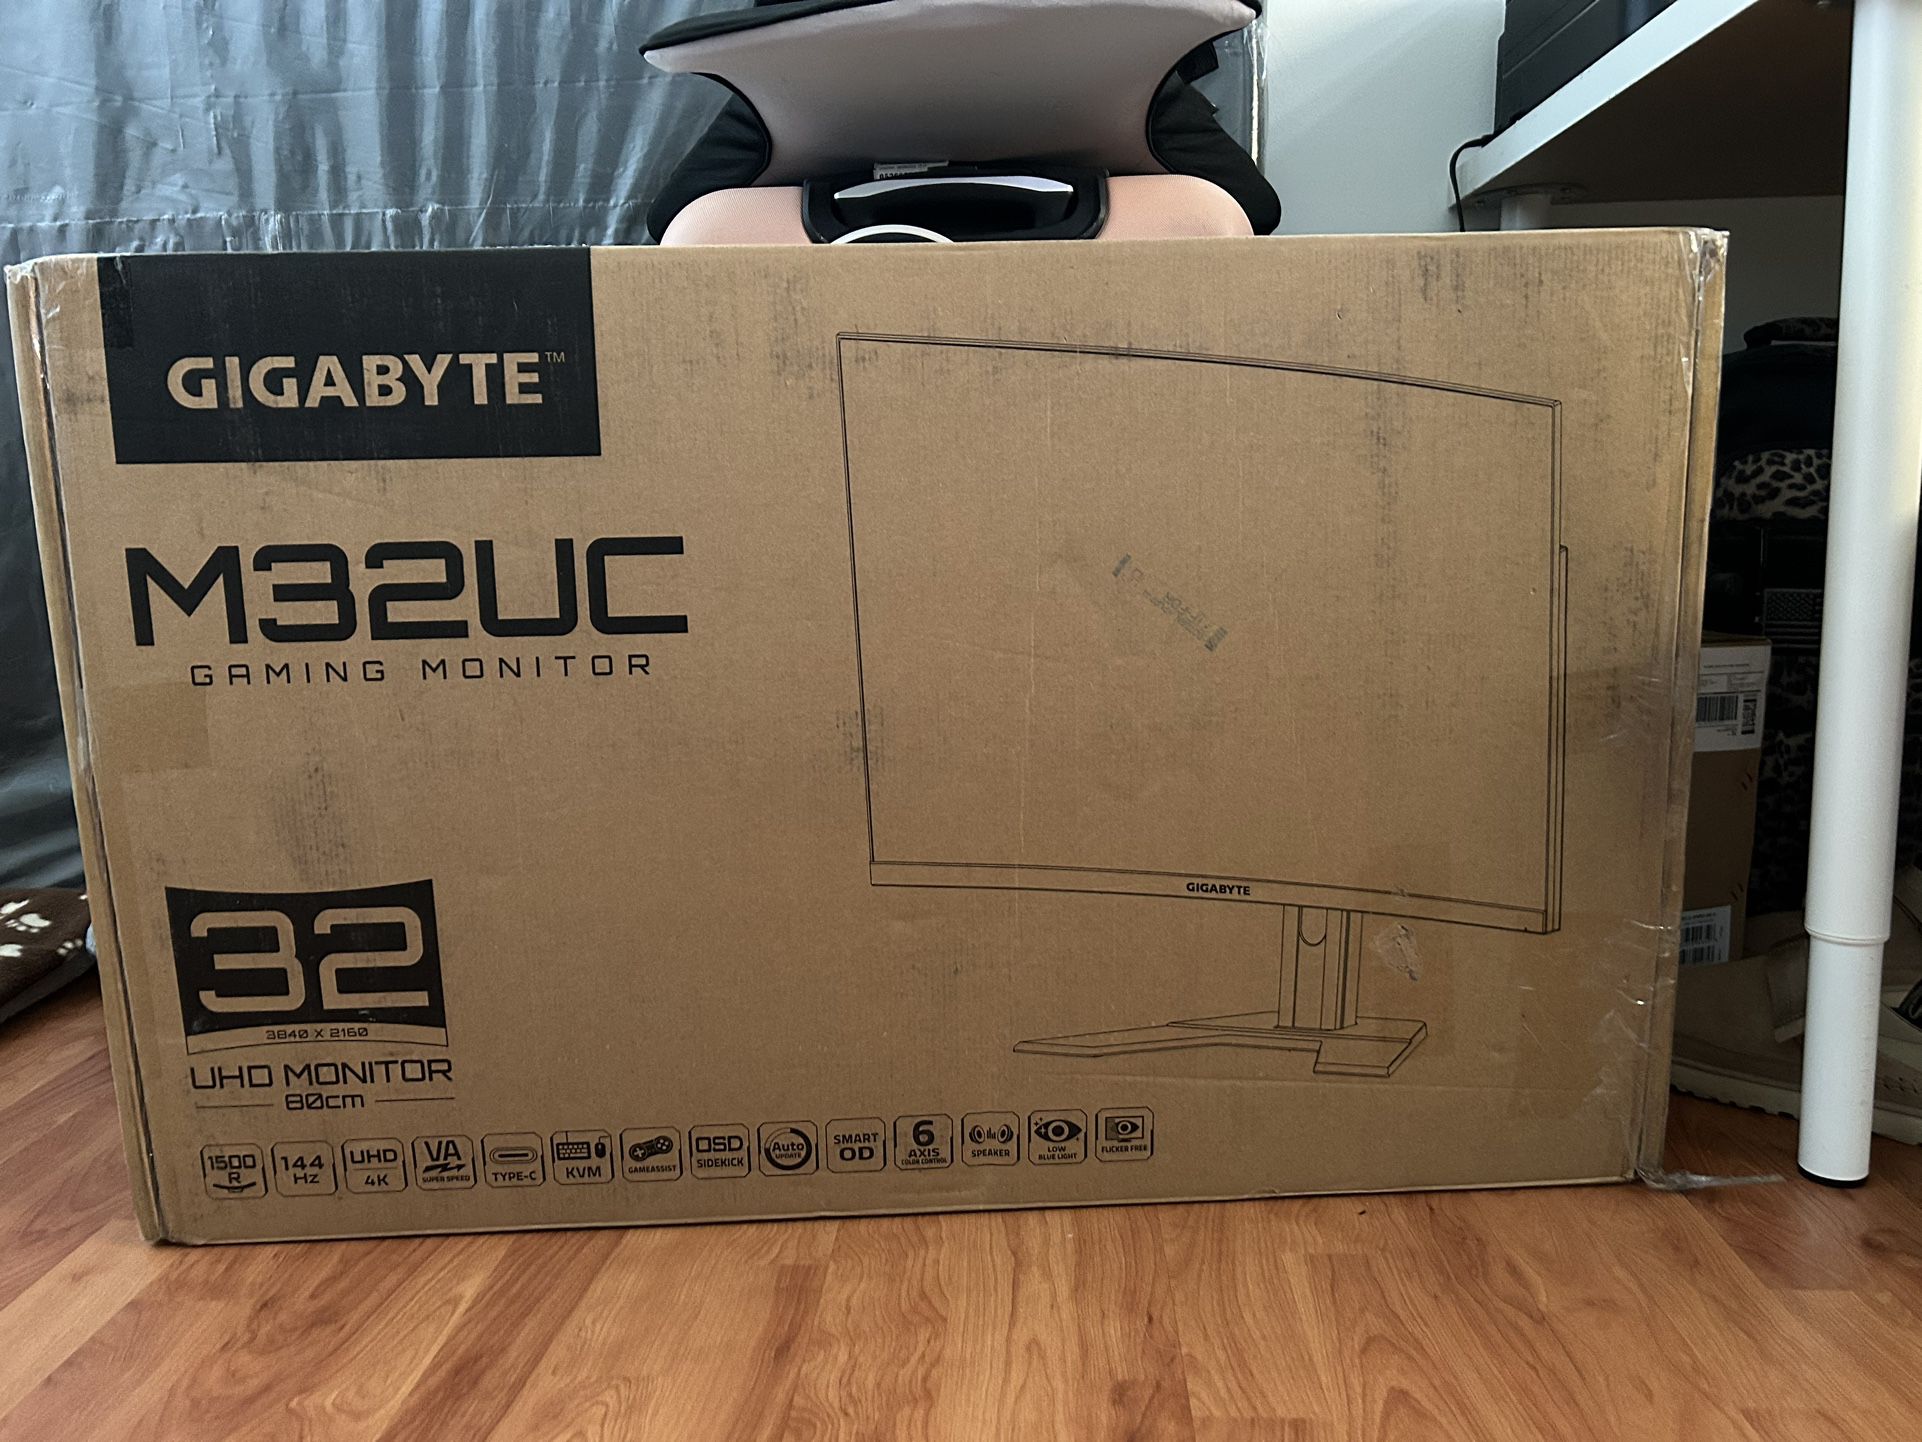 Gigabyte - M32UC - 4K Gaming Monitor 144hz Refresh Rate 